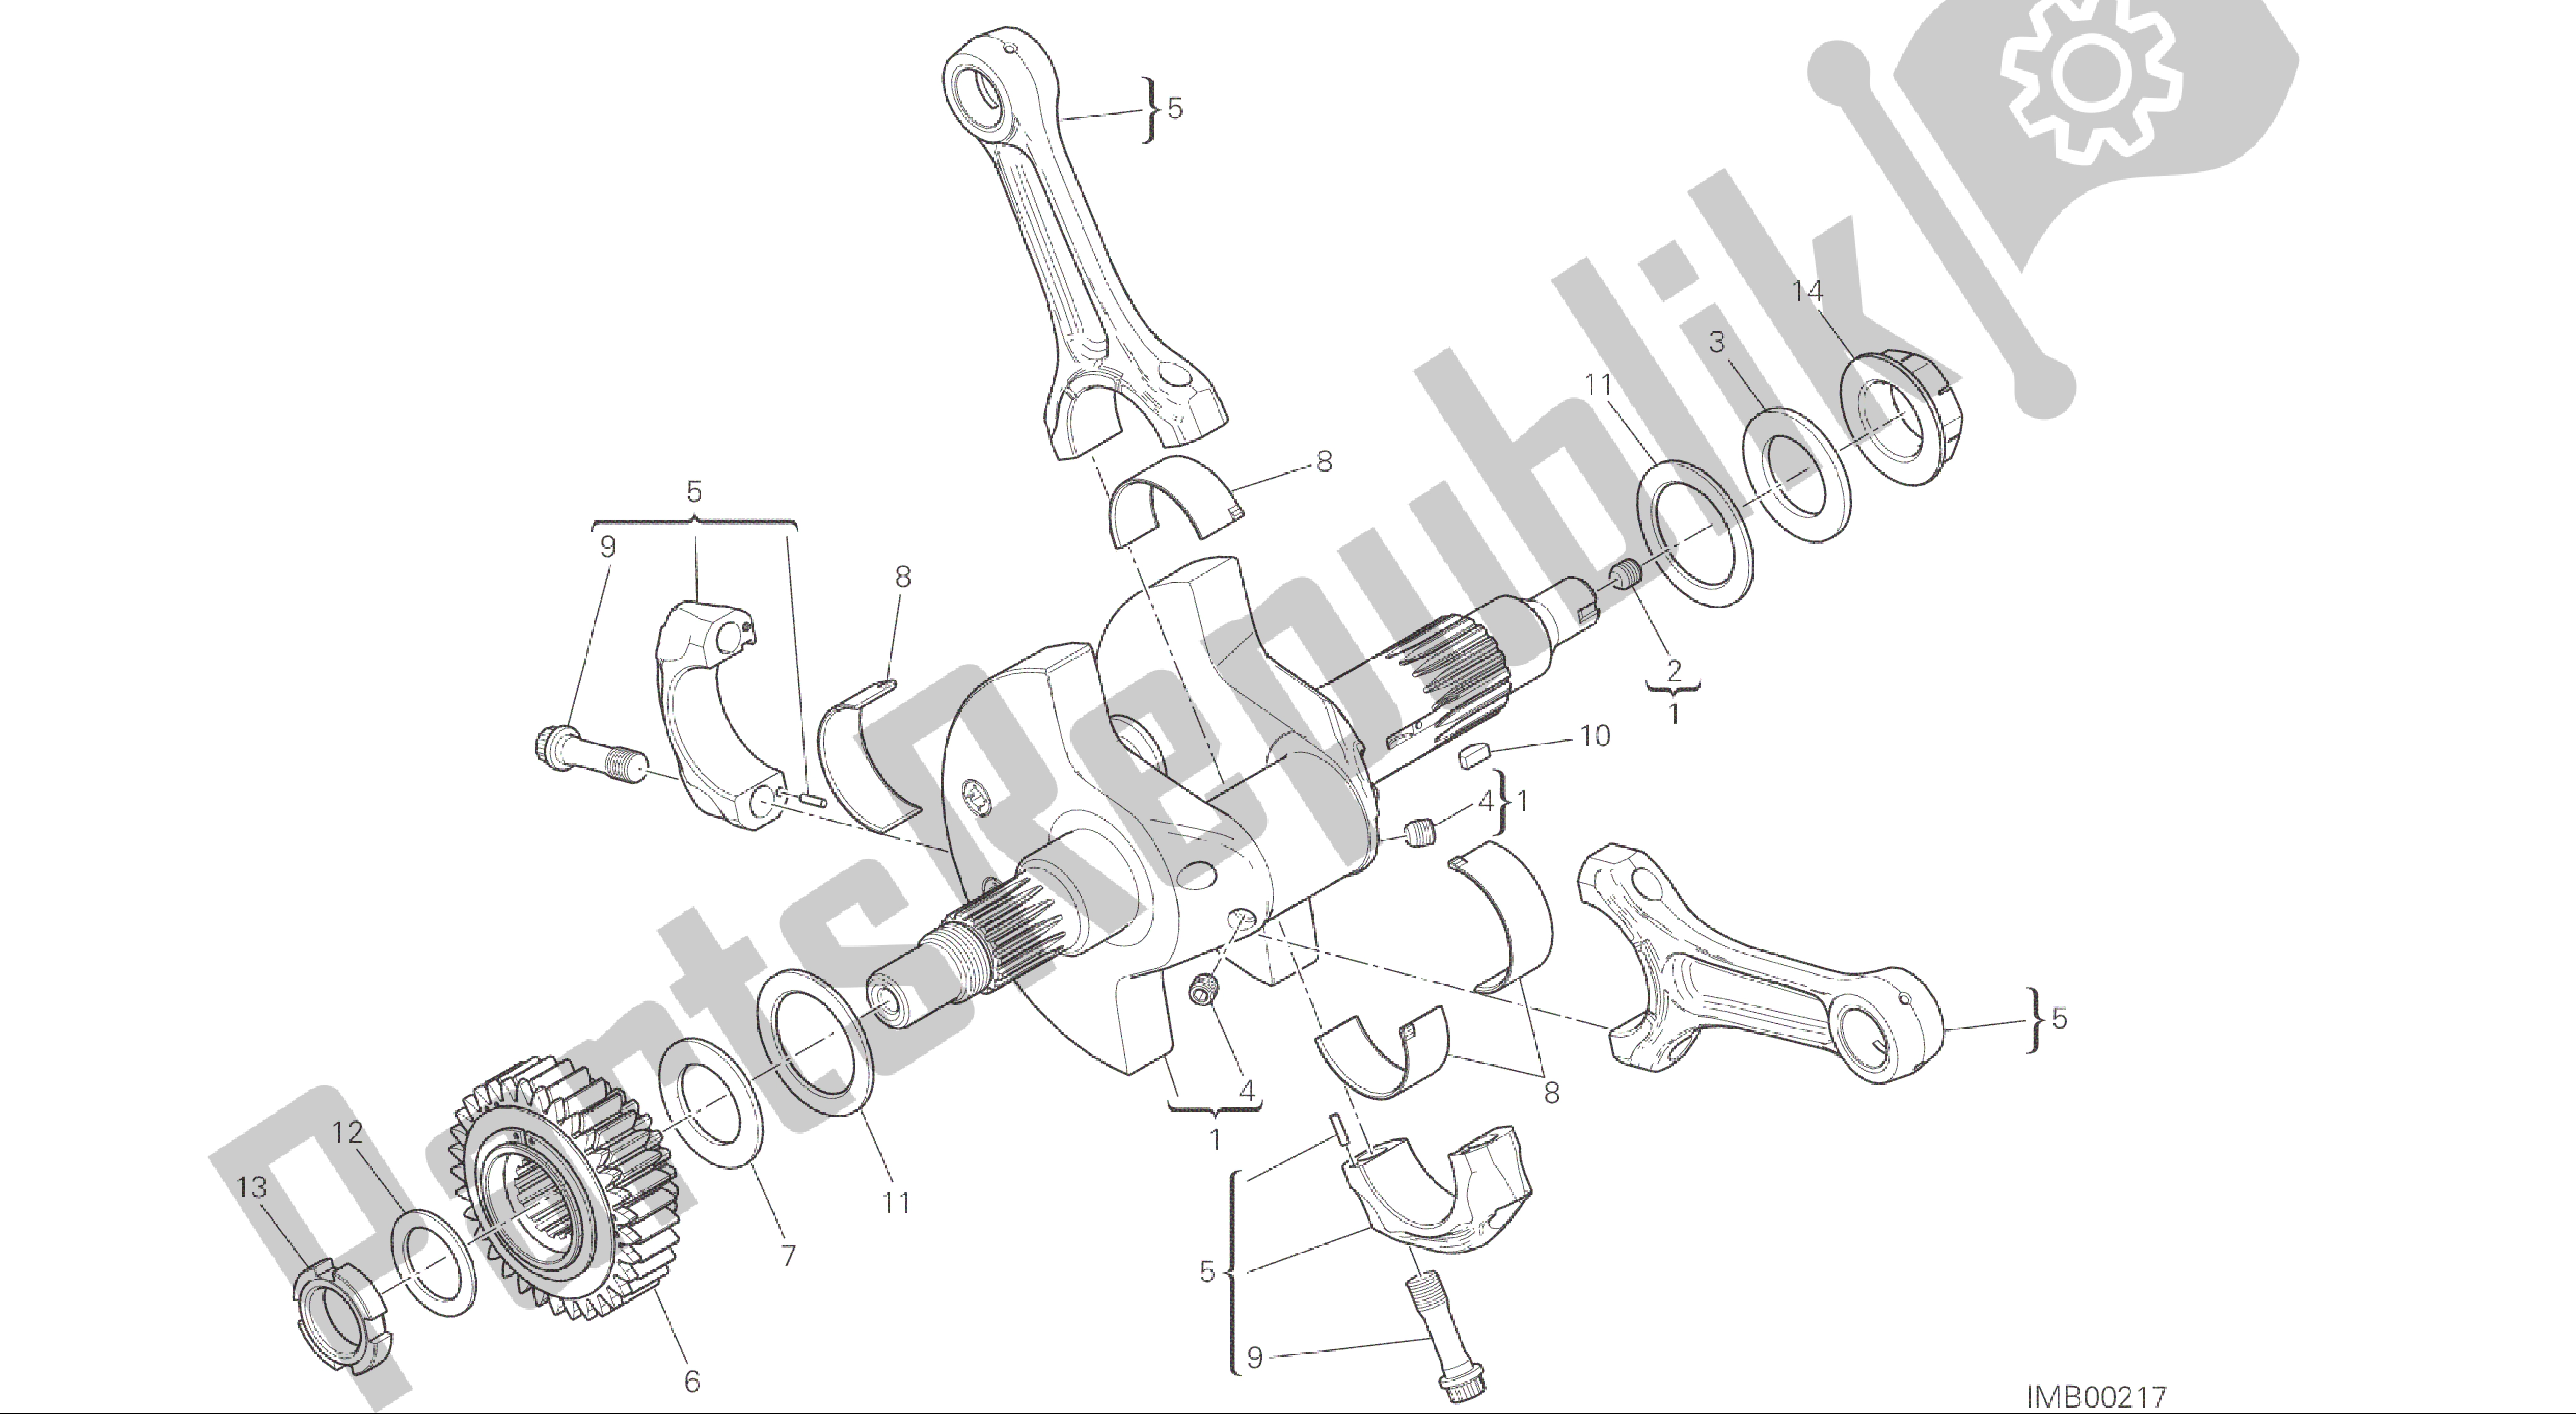 Alle onderdelen voor de Tekening 006 - Drijfstangen [mod: Ms1200; Xst: Aus, Eur, Fra, Jap] Groepsmotor van de Ducati Multistrada 1200 2015